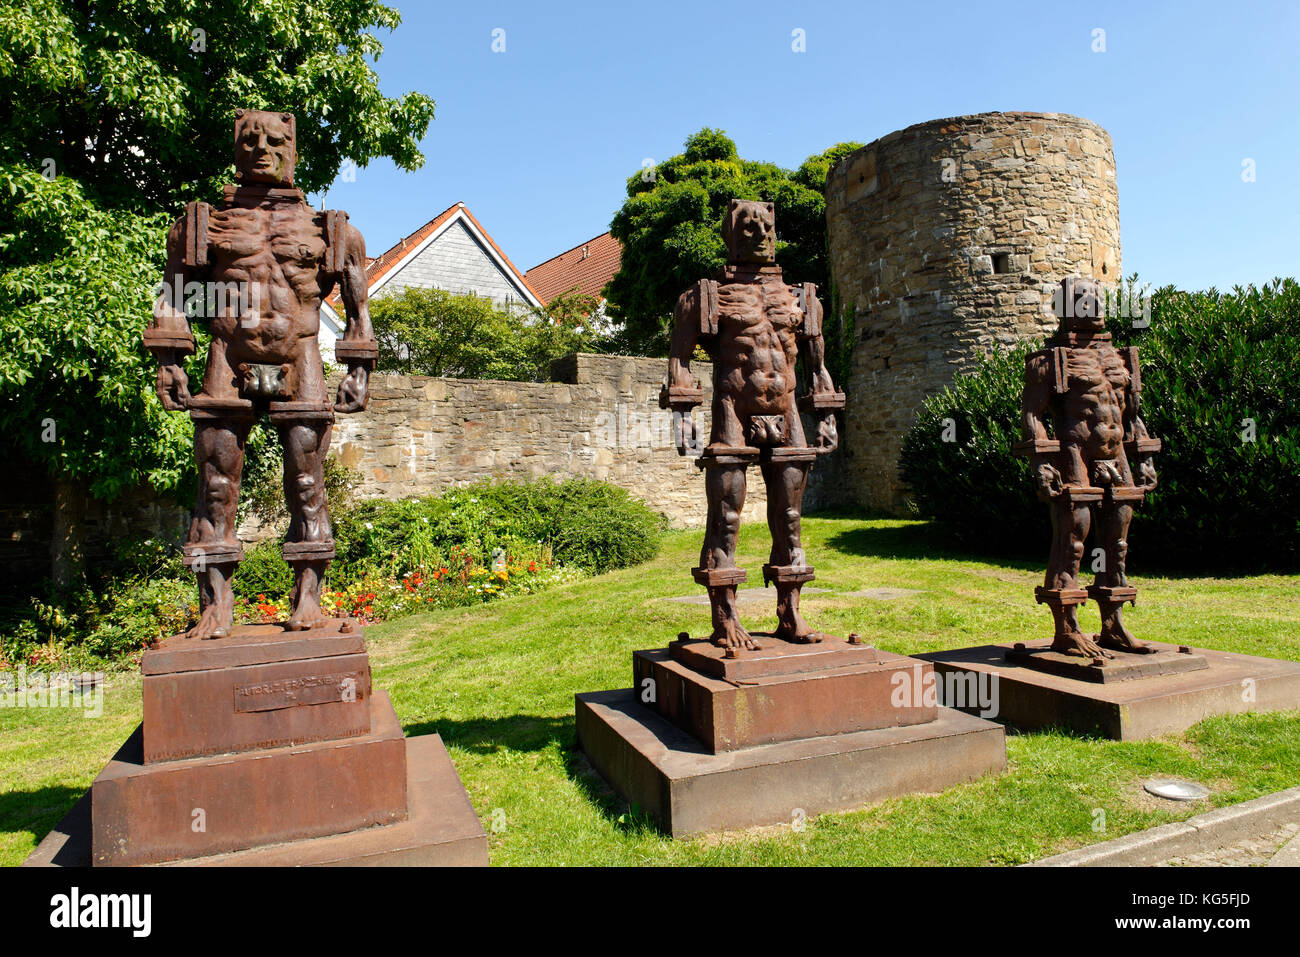 Mura cittadine di Hattingen con 'menschen aus Eisen' / tre uomini di ferro (statue), Hattingen, Renania settentrionale-Vestfalia, Germania Foto Stock